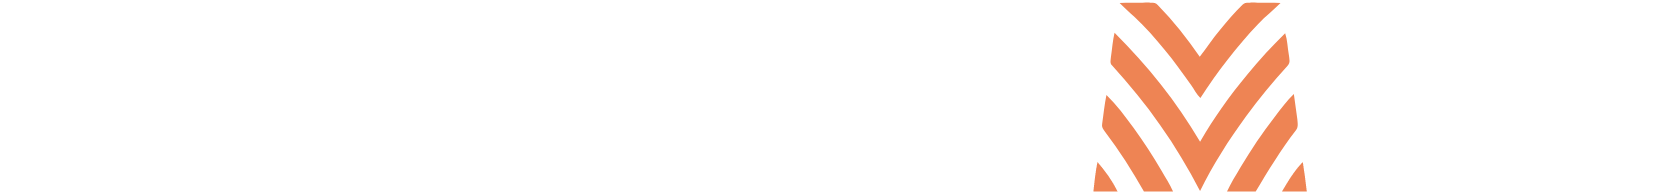 Federal Agricultural Mortgage logo large for dark backgrounds (transparent PNG)